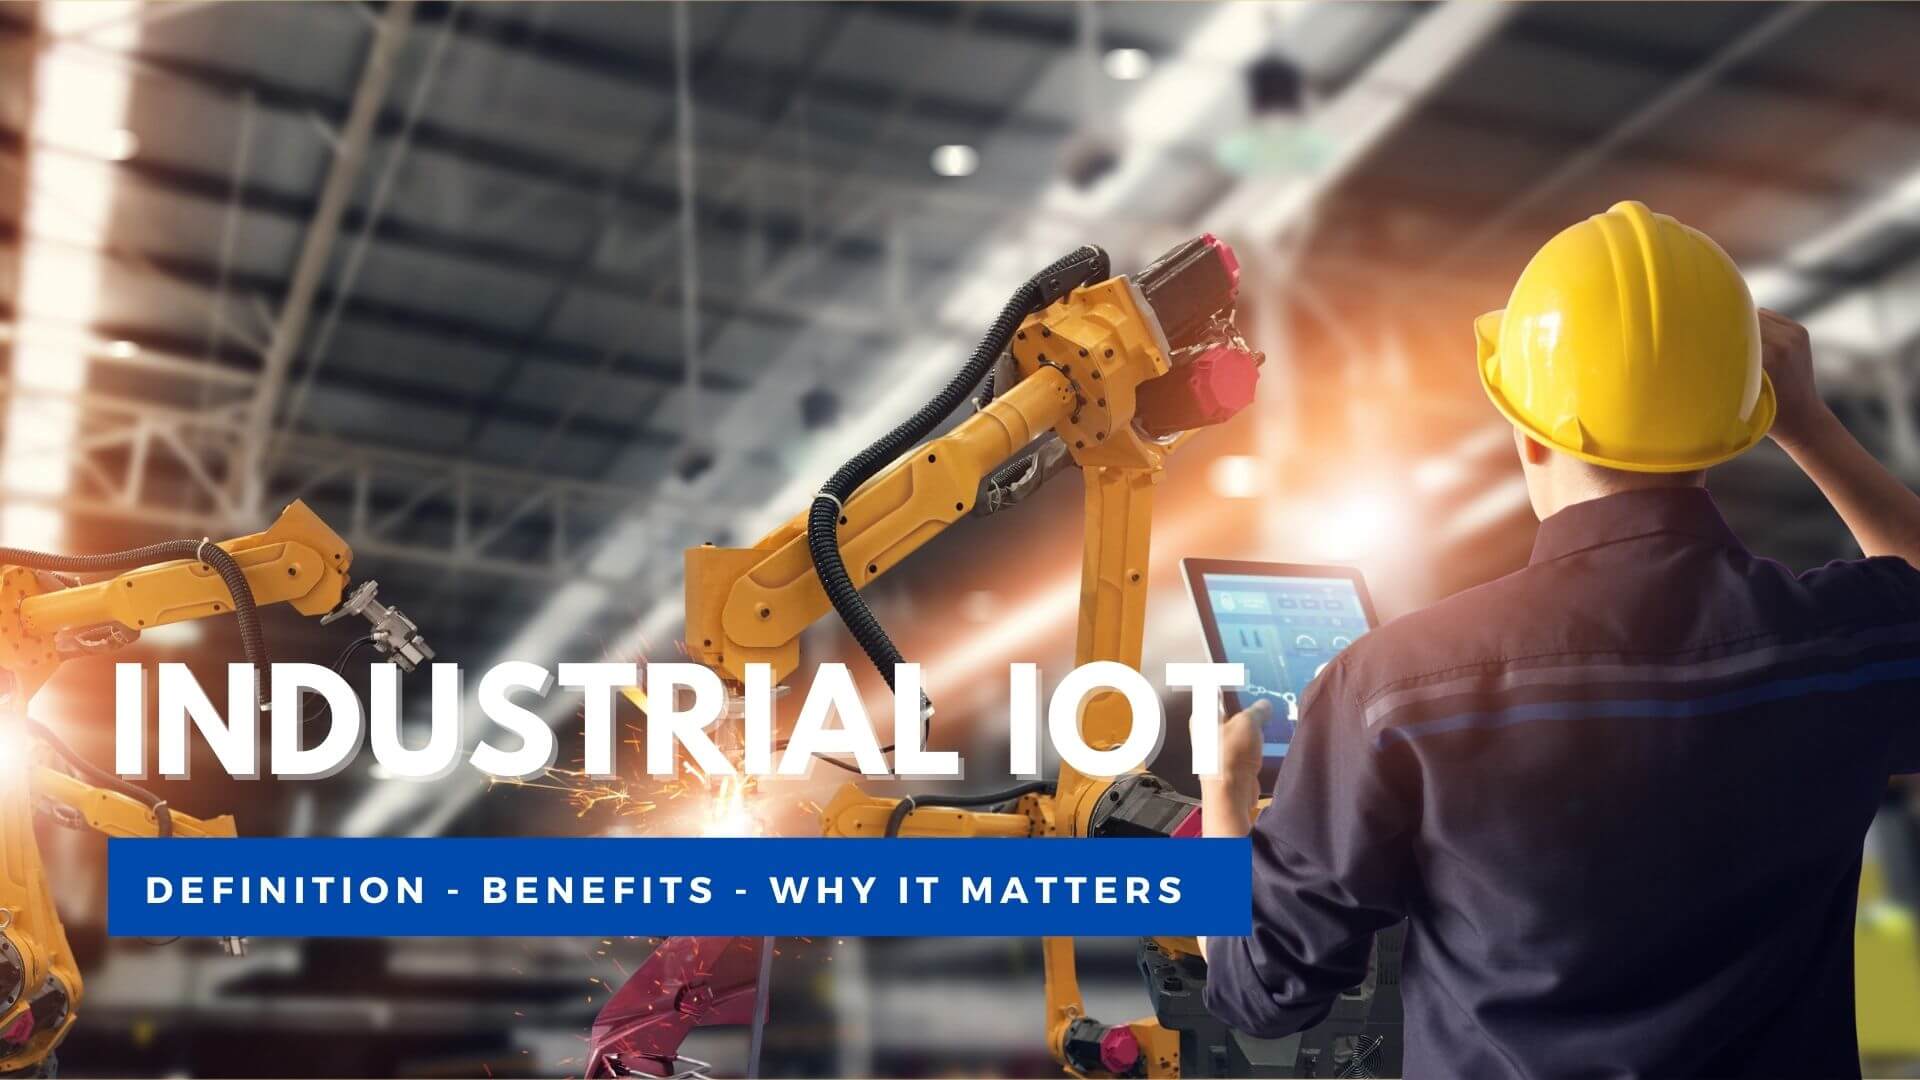 Industrial IoT - IIoT